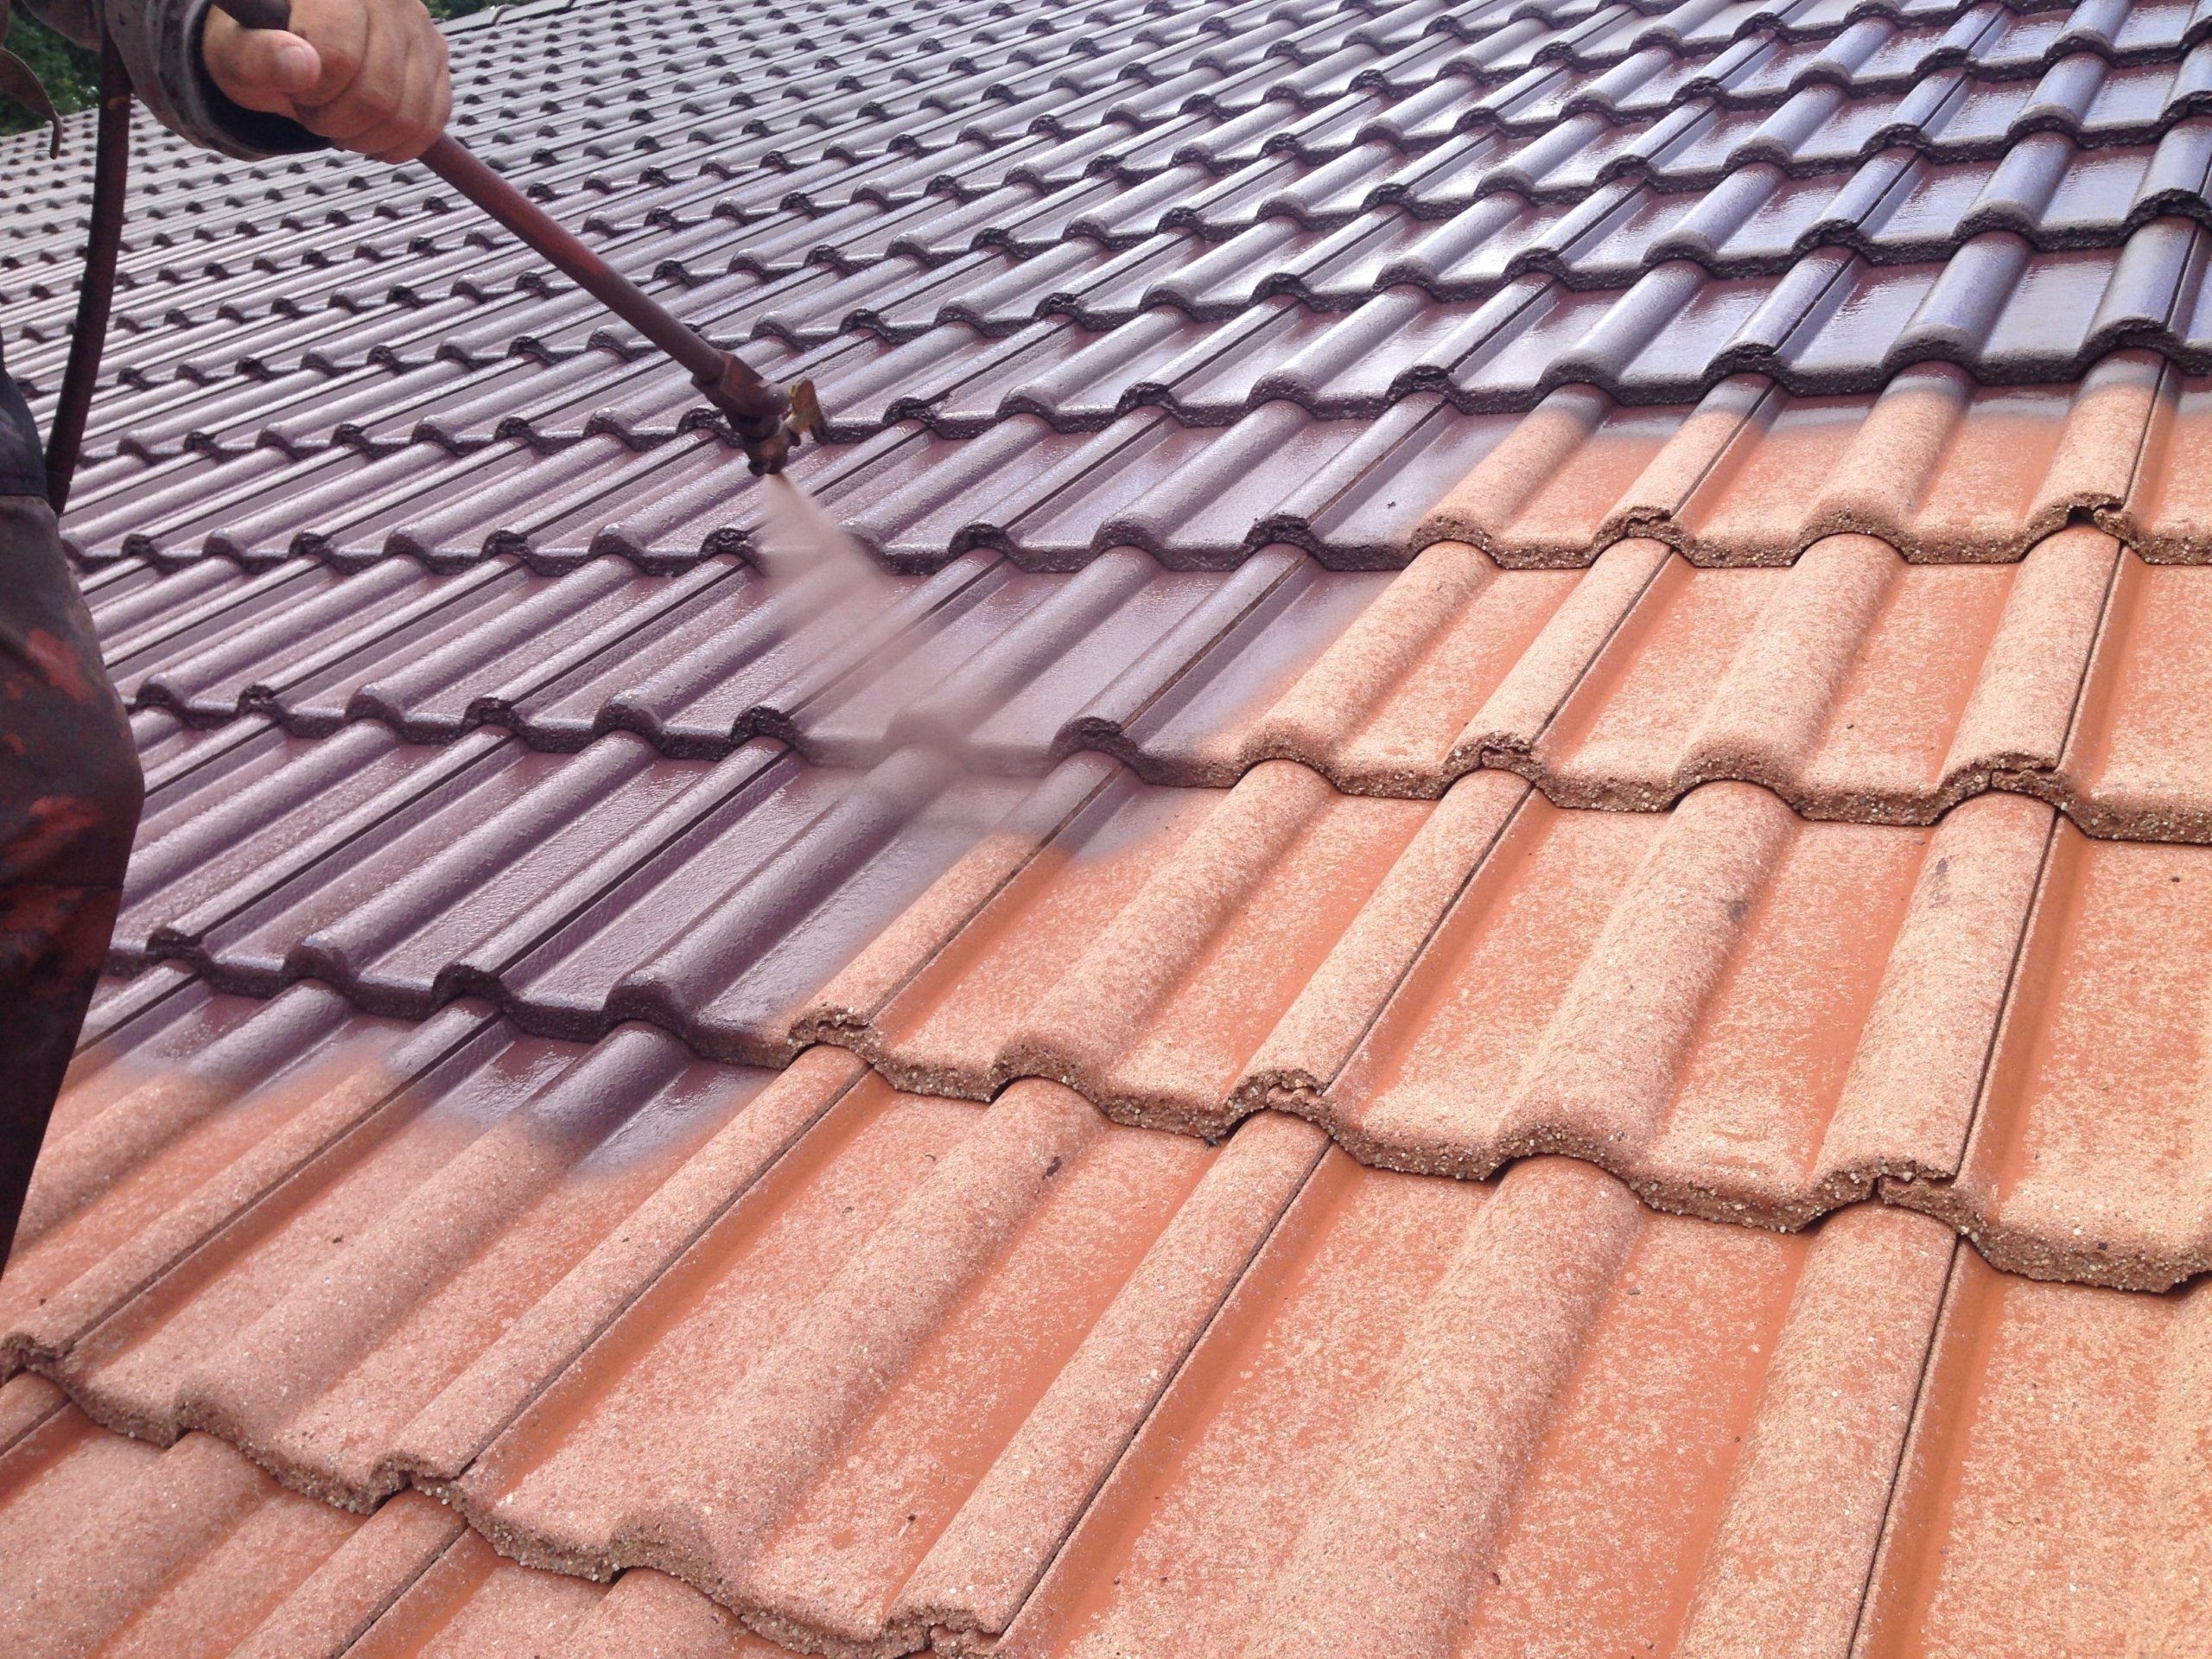 Dachreinigung mit Dachbeschichtung 8 dach beschichten mit airless spr%C3%BChger%C3%A4t in der farbe anthrazit scaled